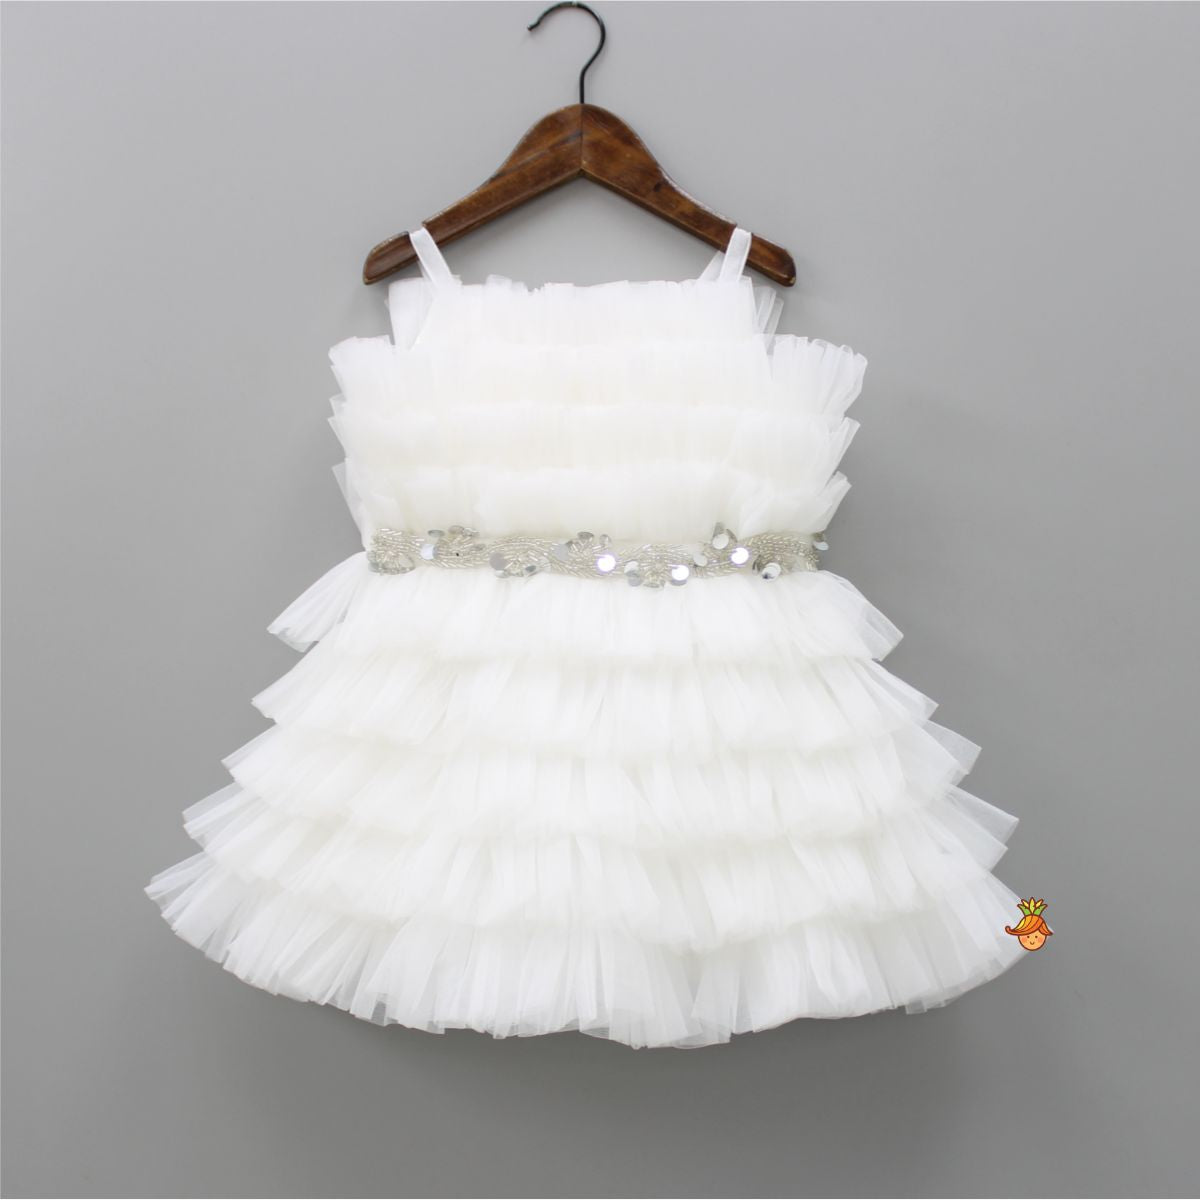 Stunning Ruffled White Dress